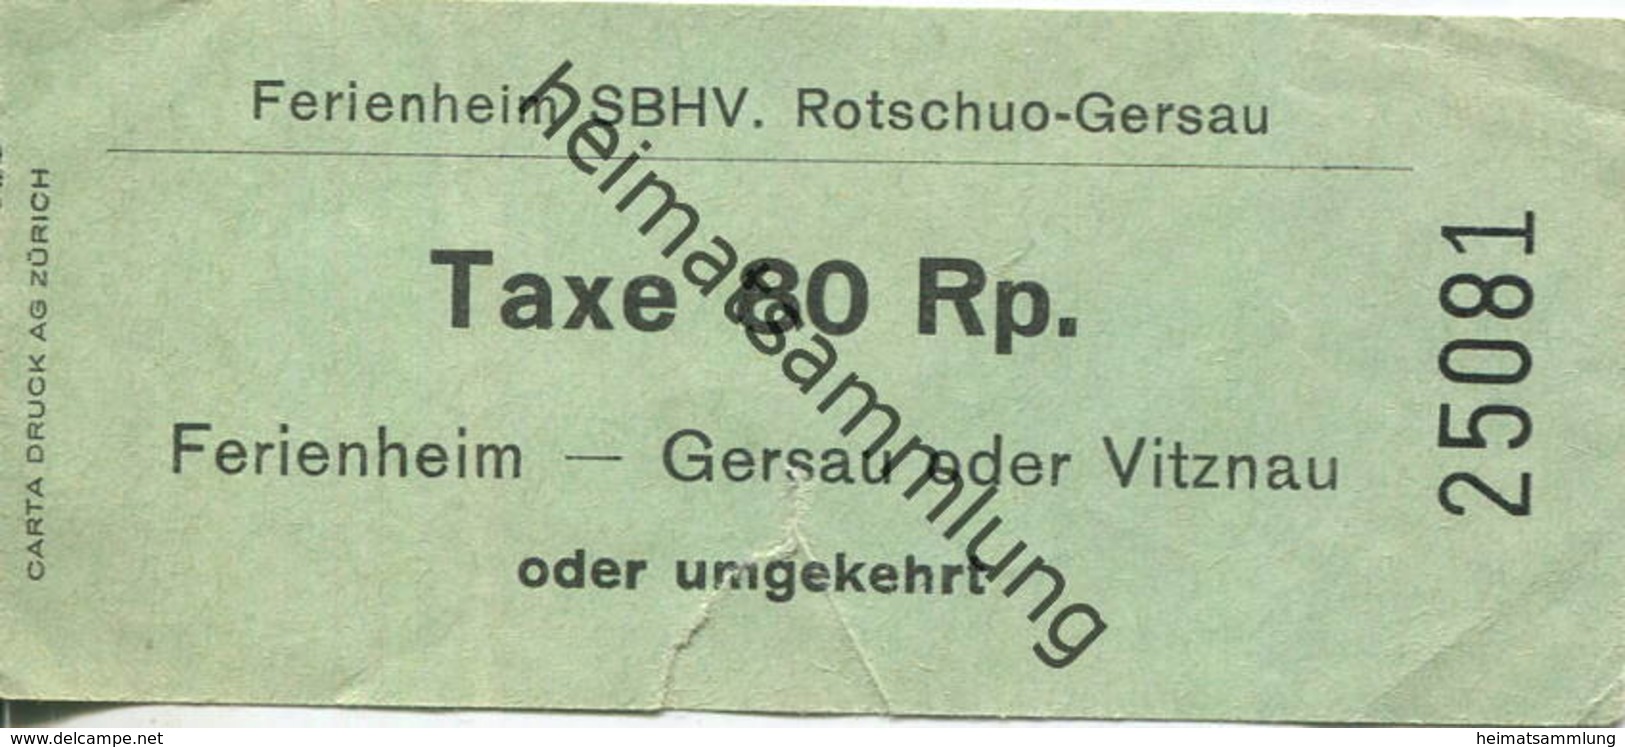 Schweiz - Ferienheim SBHV - Rotschuo-Gersau - Fahrschein Gersau Vitznau Oder Umgekehrt 80 Rp. - Europe